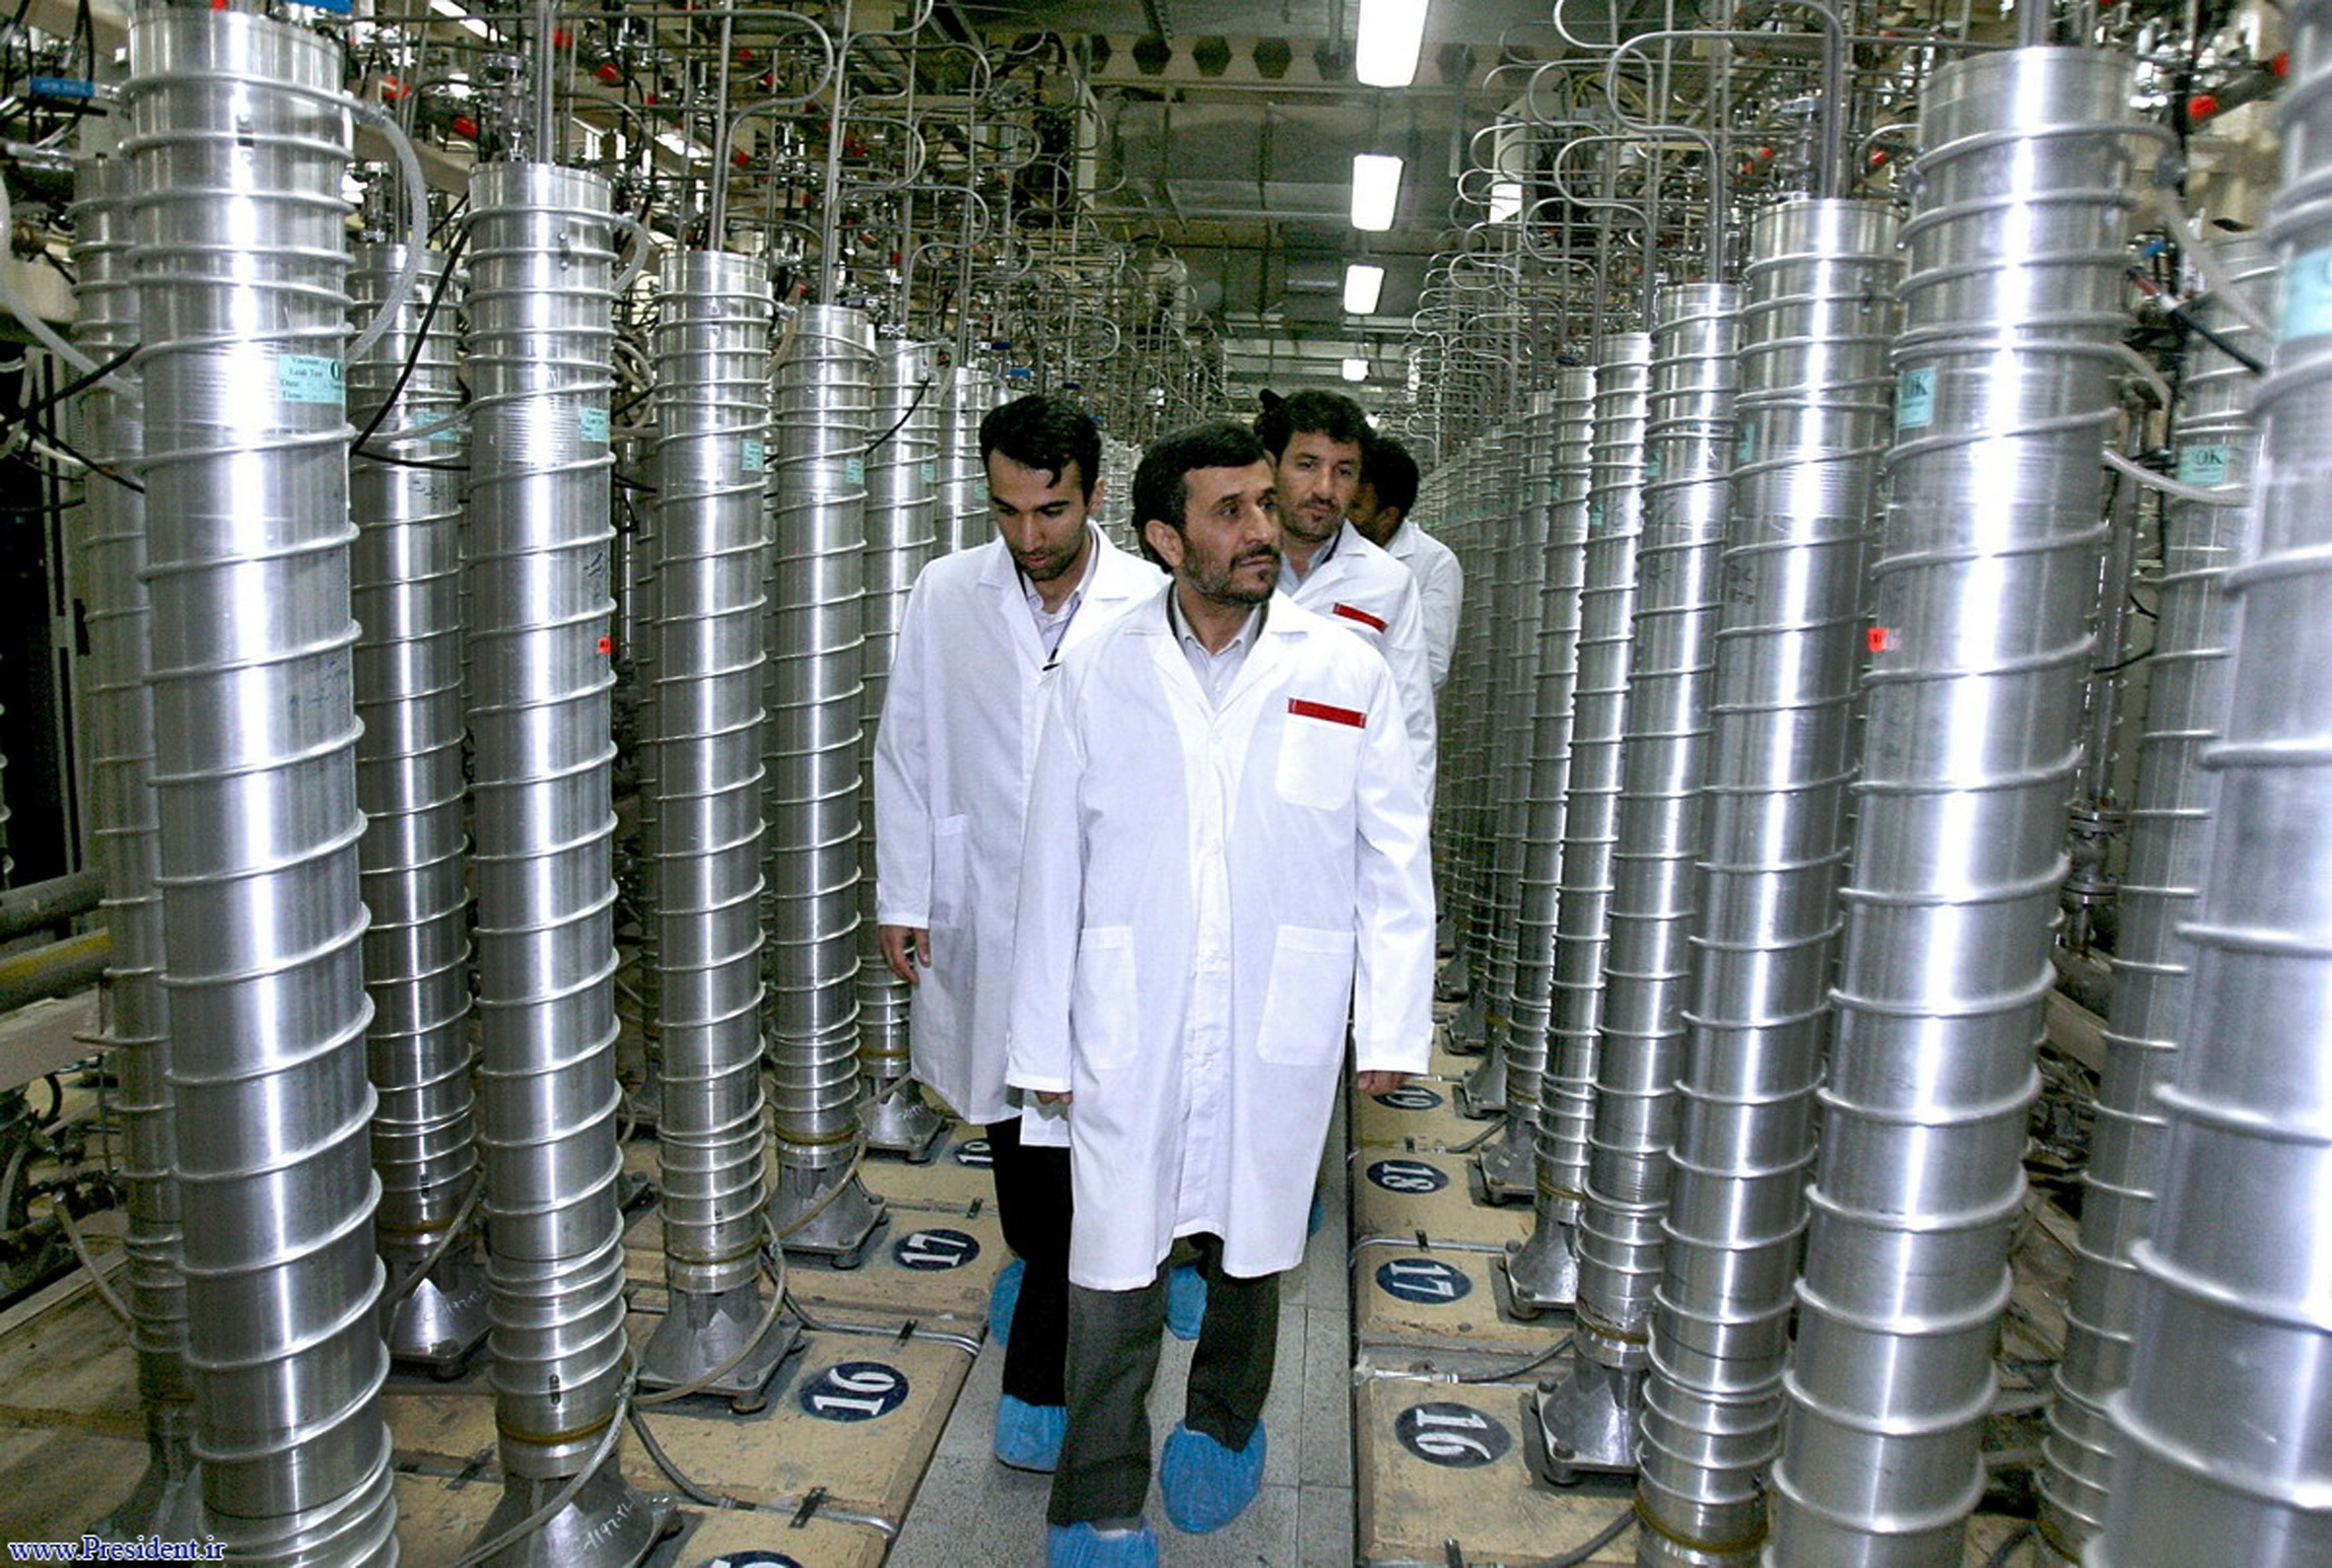 Den iranske presidenten Mahmud Ahmadinejad under ett besök på en av landets kärnkraftsanläggningar.